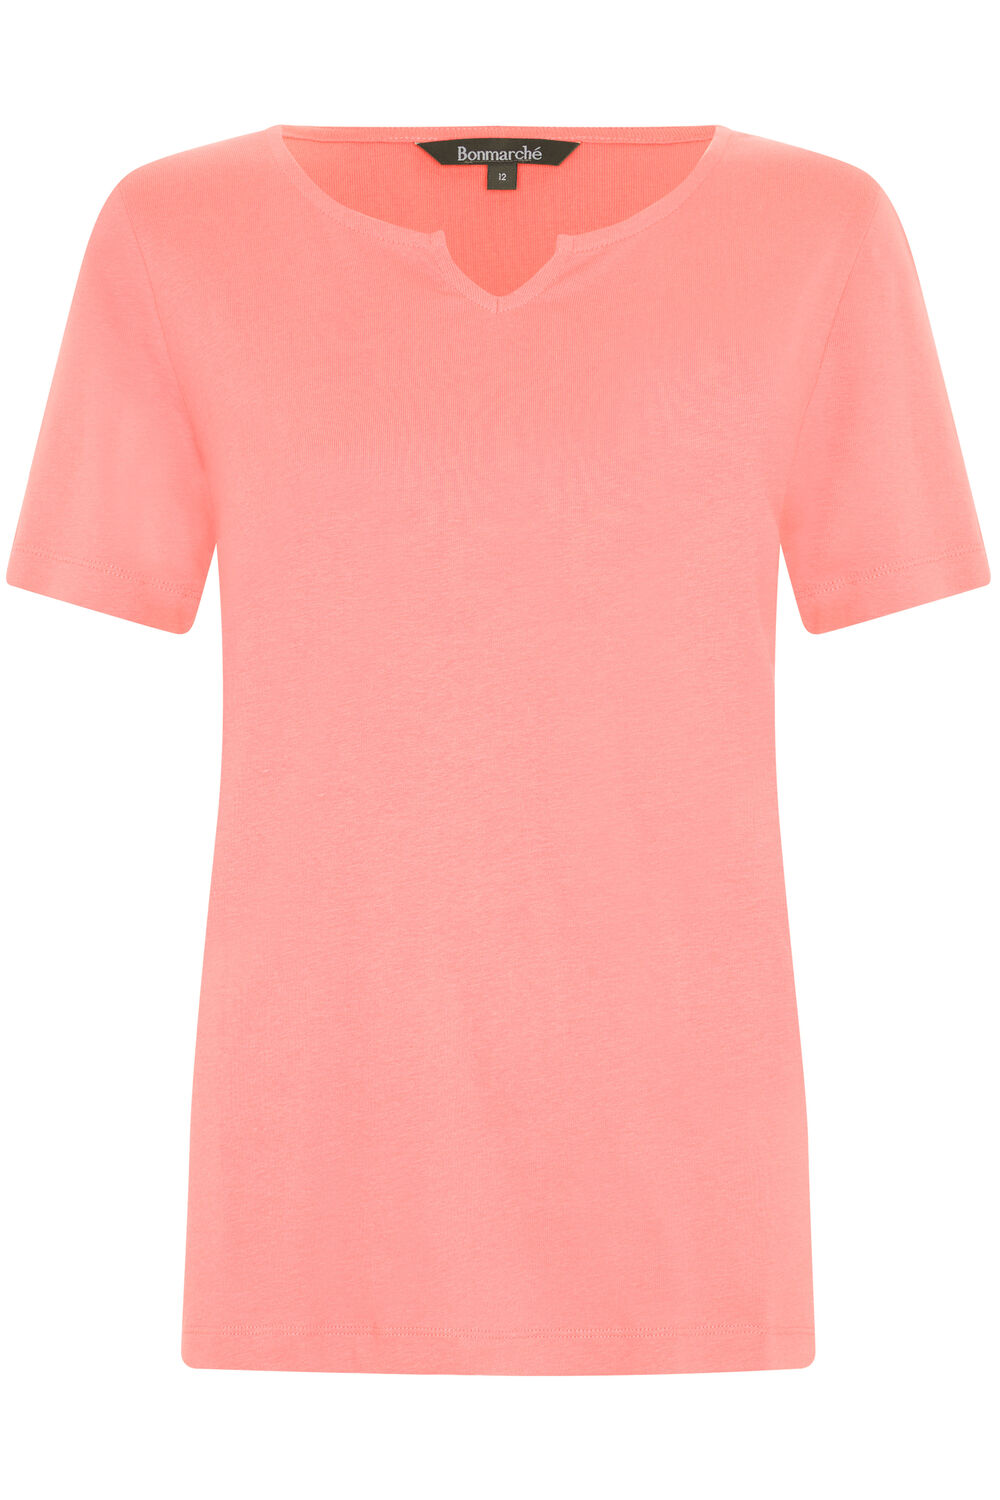 Bonmarche Coral Short Sleeve Plain Notch Neck T-Shirt, Size: 28